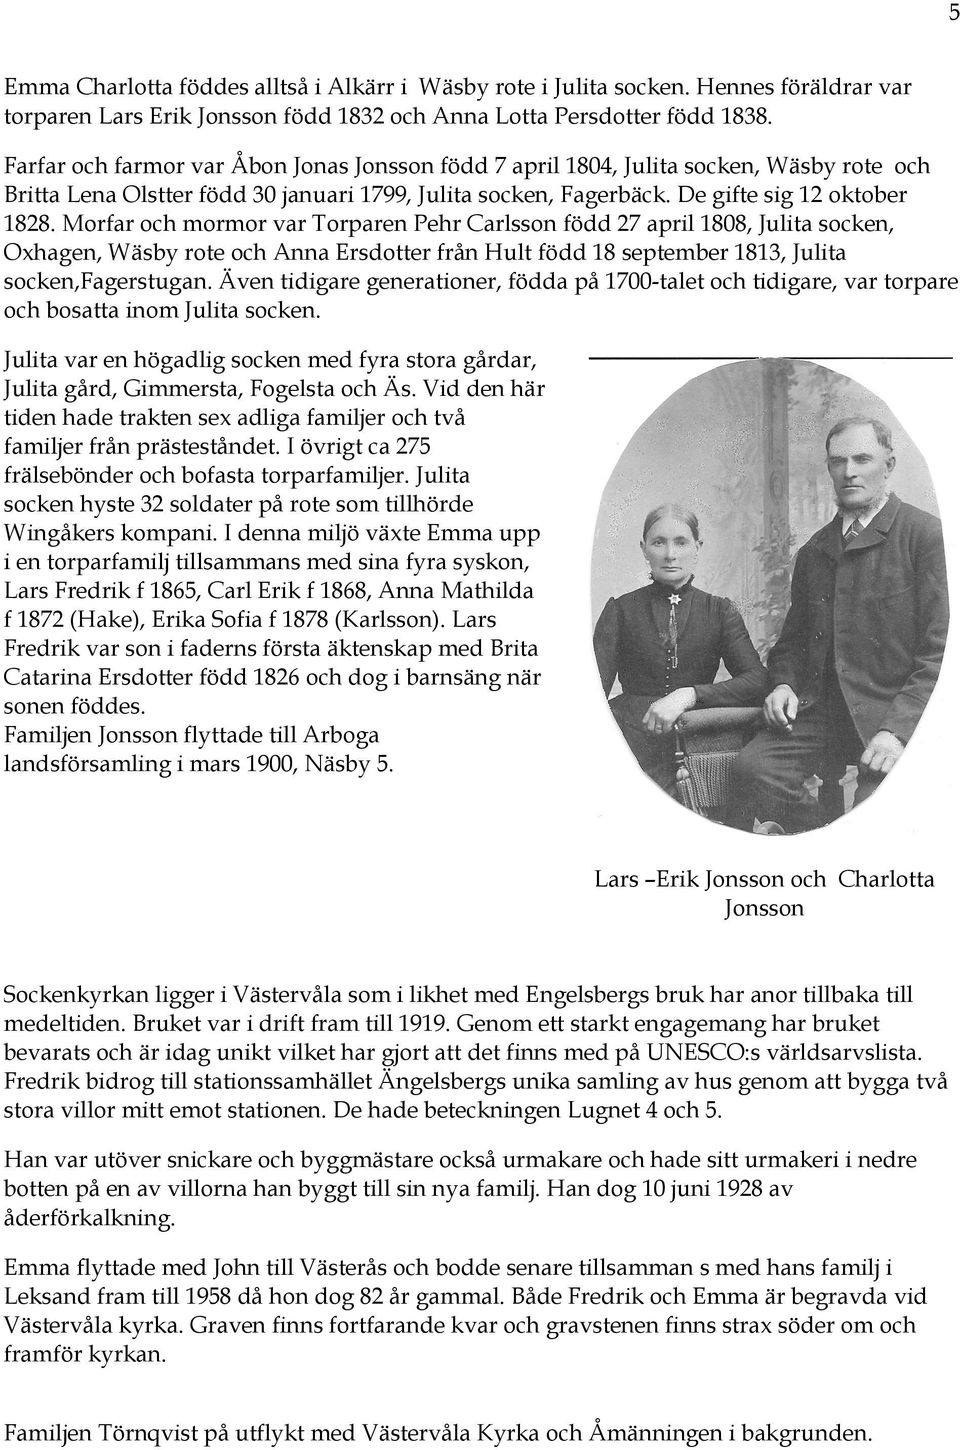 Morfar och mormor var Torparen Pehr Carlsson född 27 april 1808, Julita socken, Oxhagen, Wäsby rote och Anna Ersdotter från Hult född 18 september 1813, Julita socken,fagerstugan.